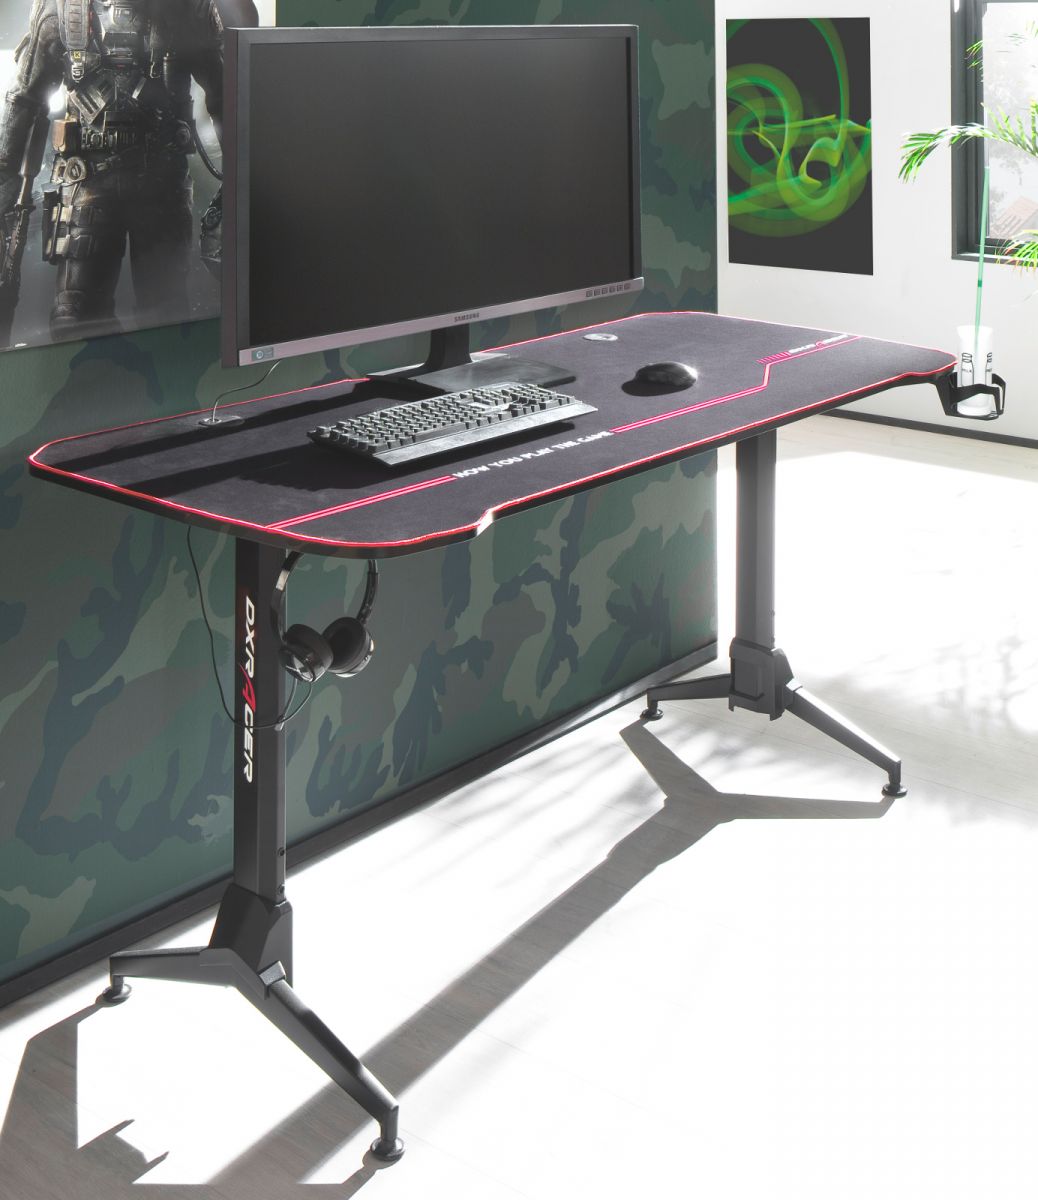 Gamingtisch 'DX-Racer' in schwarz Computertisch 159 x 73 cm Gaming Desk höhenverstellbar